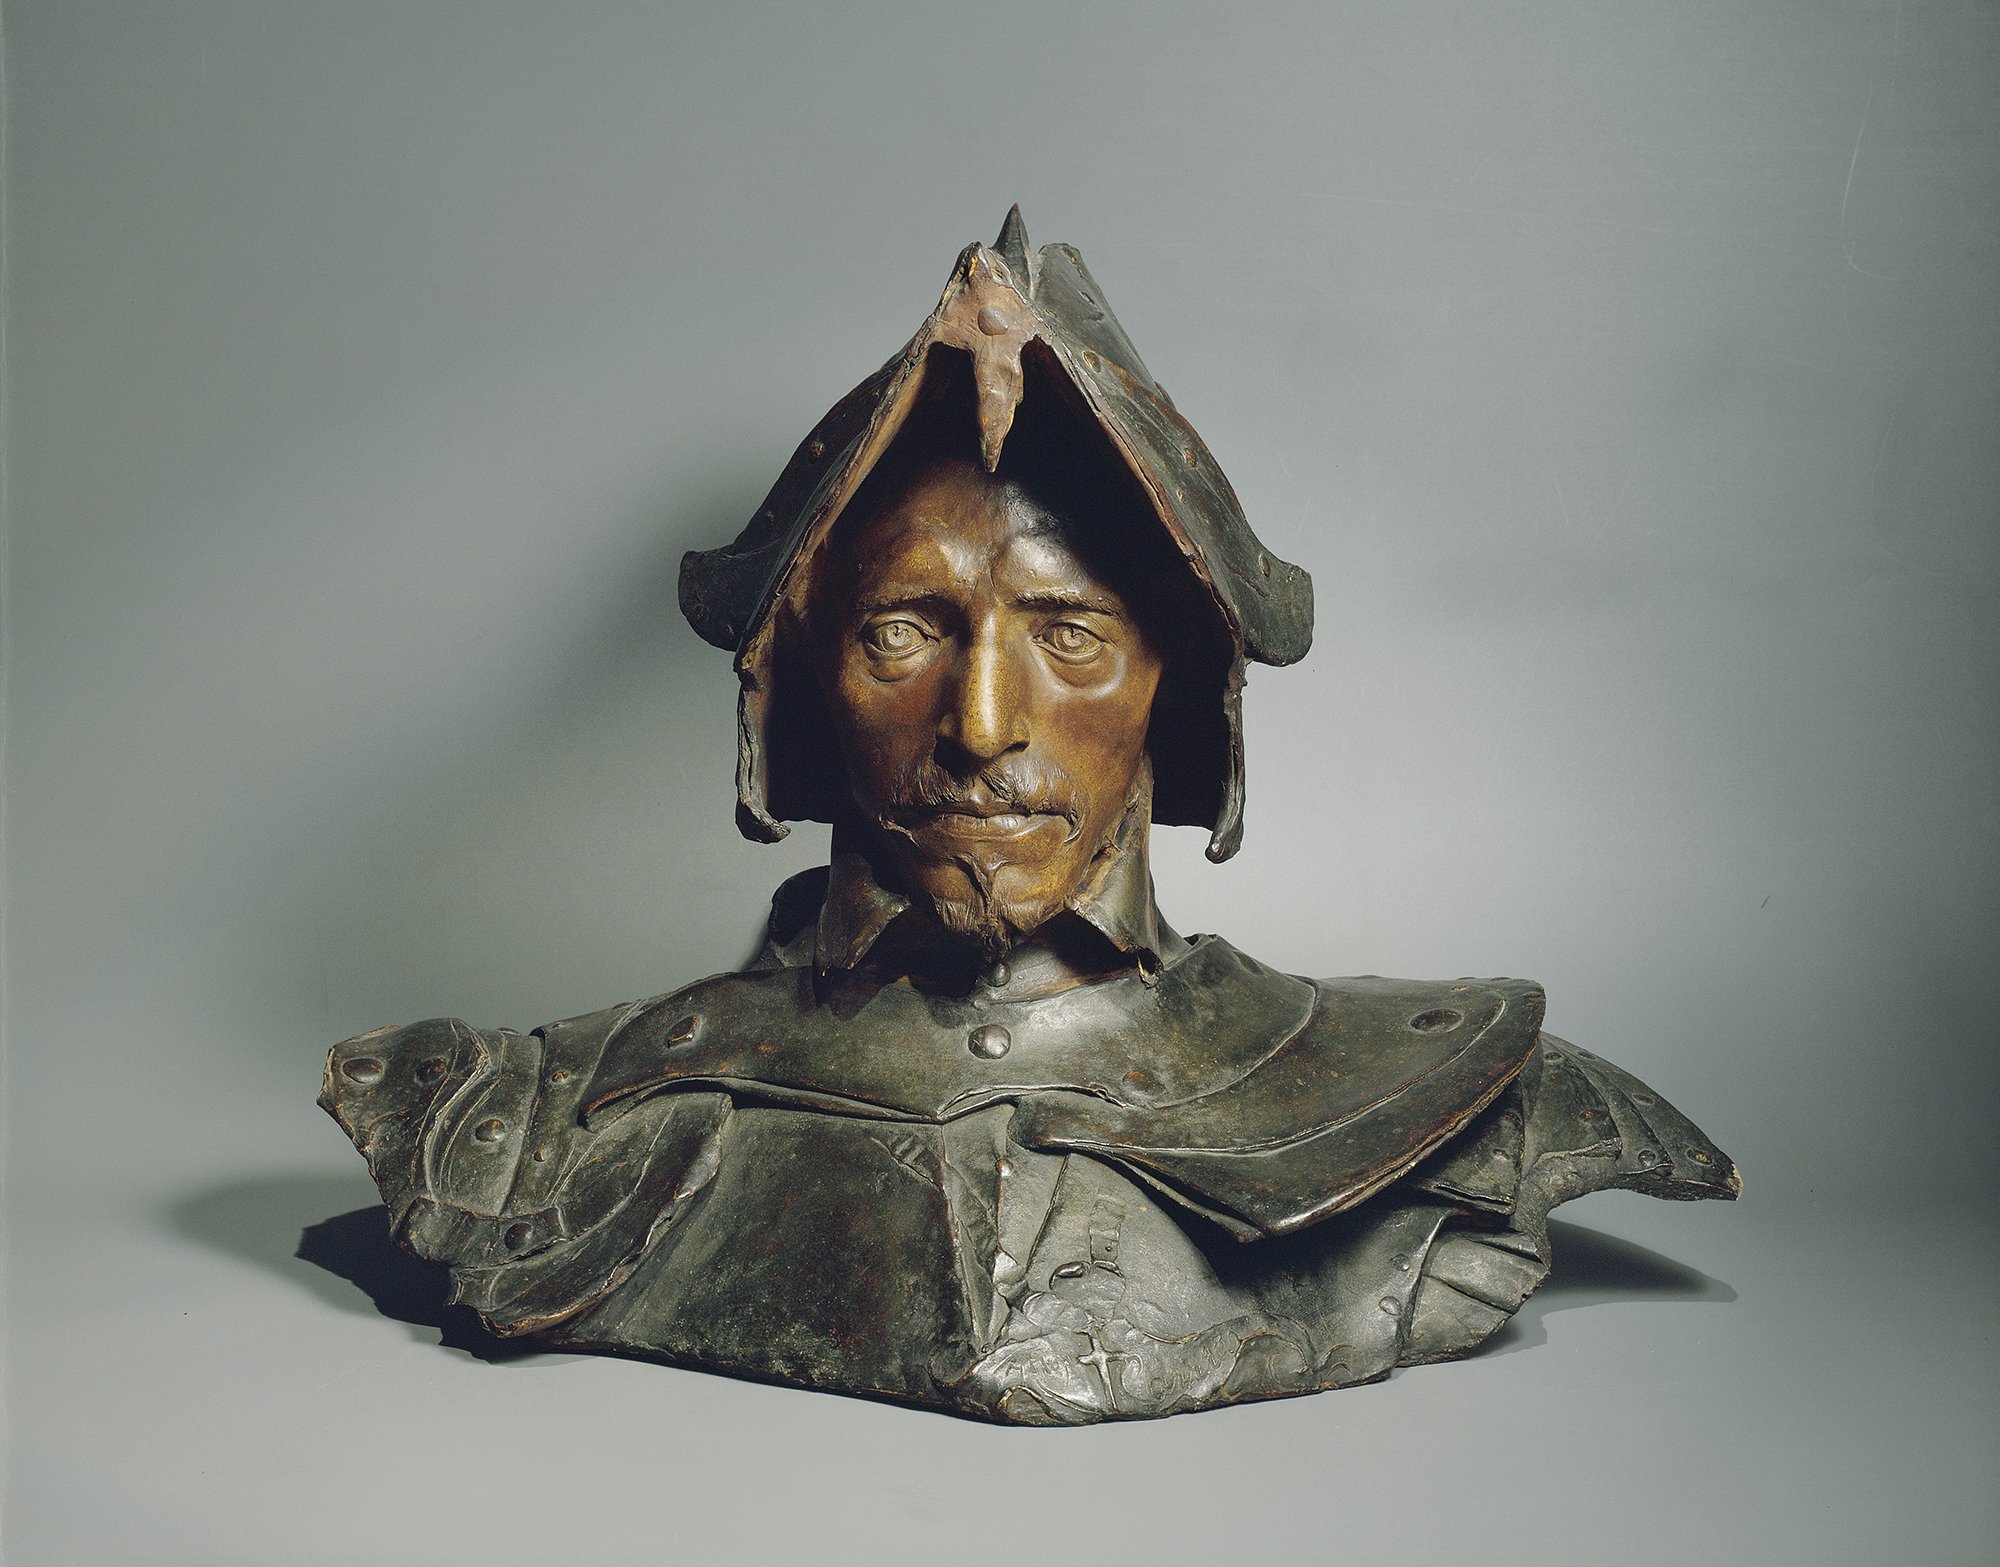 Abbildung der Skulptur "Der Krieger" von Jean Carriès aus dem Jahr 1881, das in der Ausstellung "Ich bin hier" vom 31. Oktober 2015 bis 31. Januar 2016 in der Staatlichen Kunsthalle Karlsruhe zu sehen war.